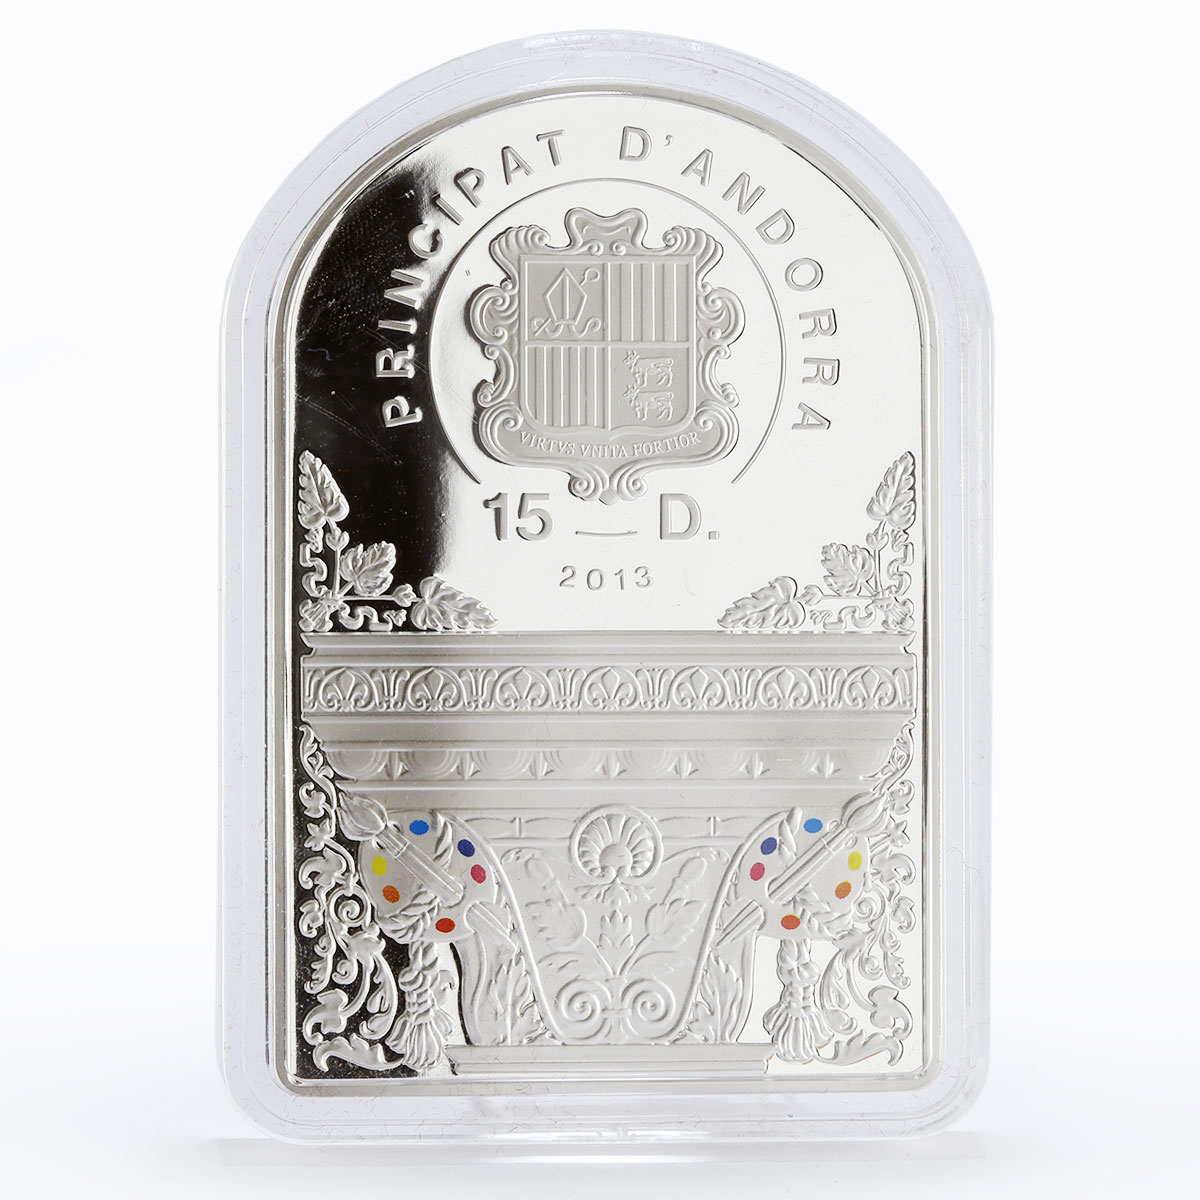 Andorra 15 diners Antonio da Correggio Adoration of the Child silver coin 2013